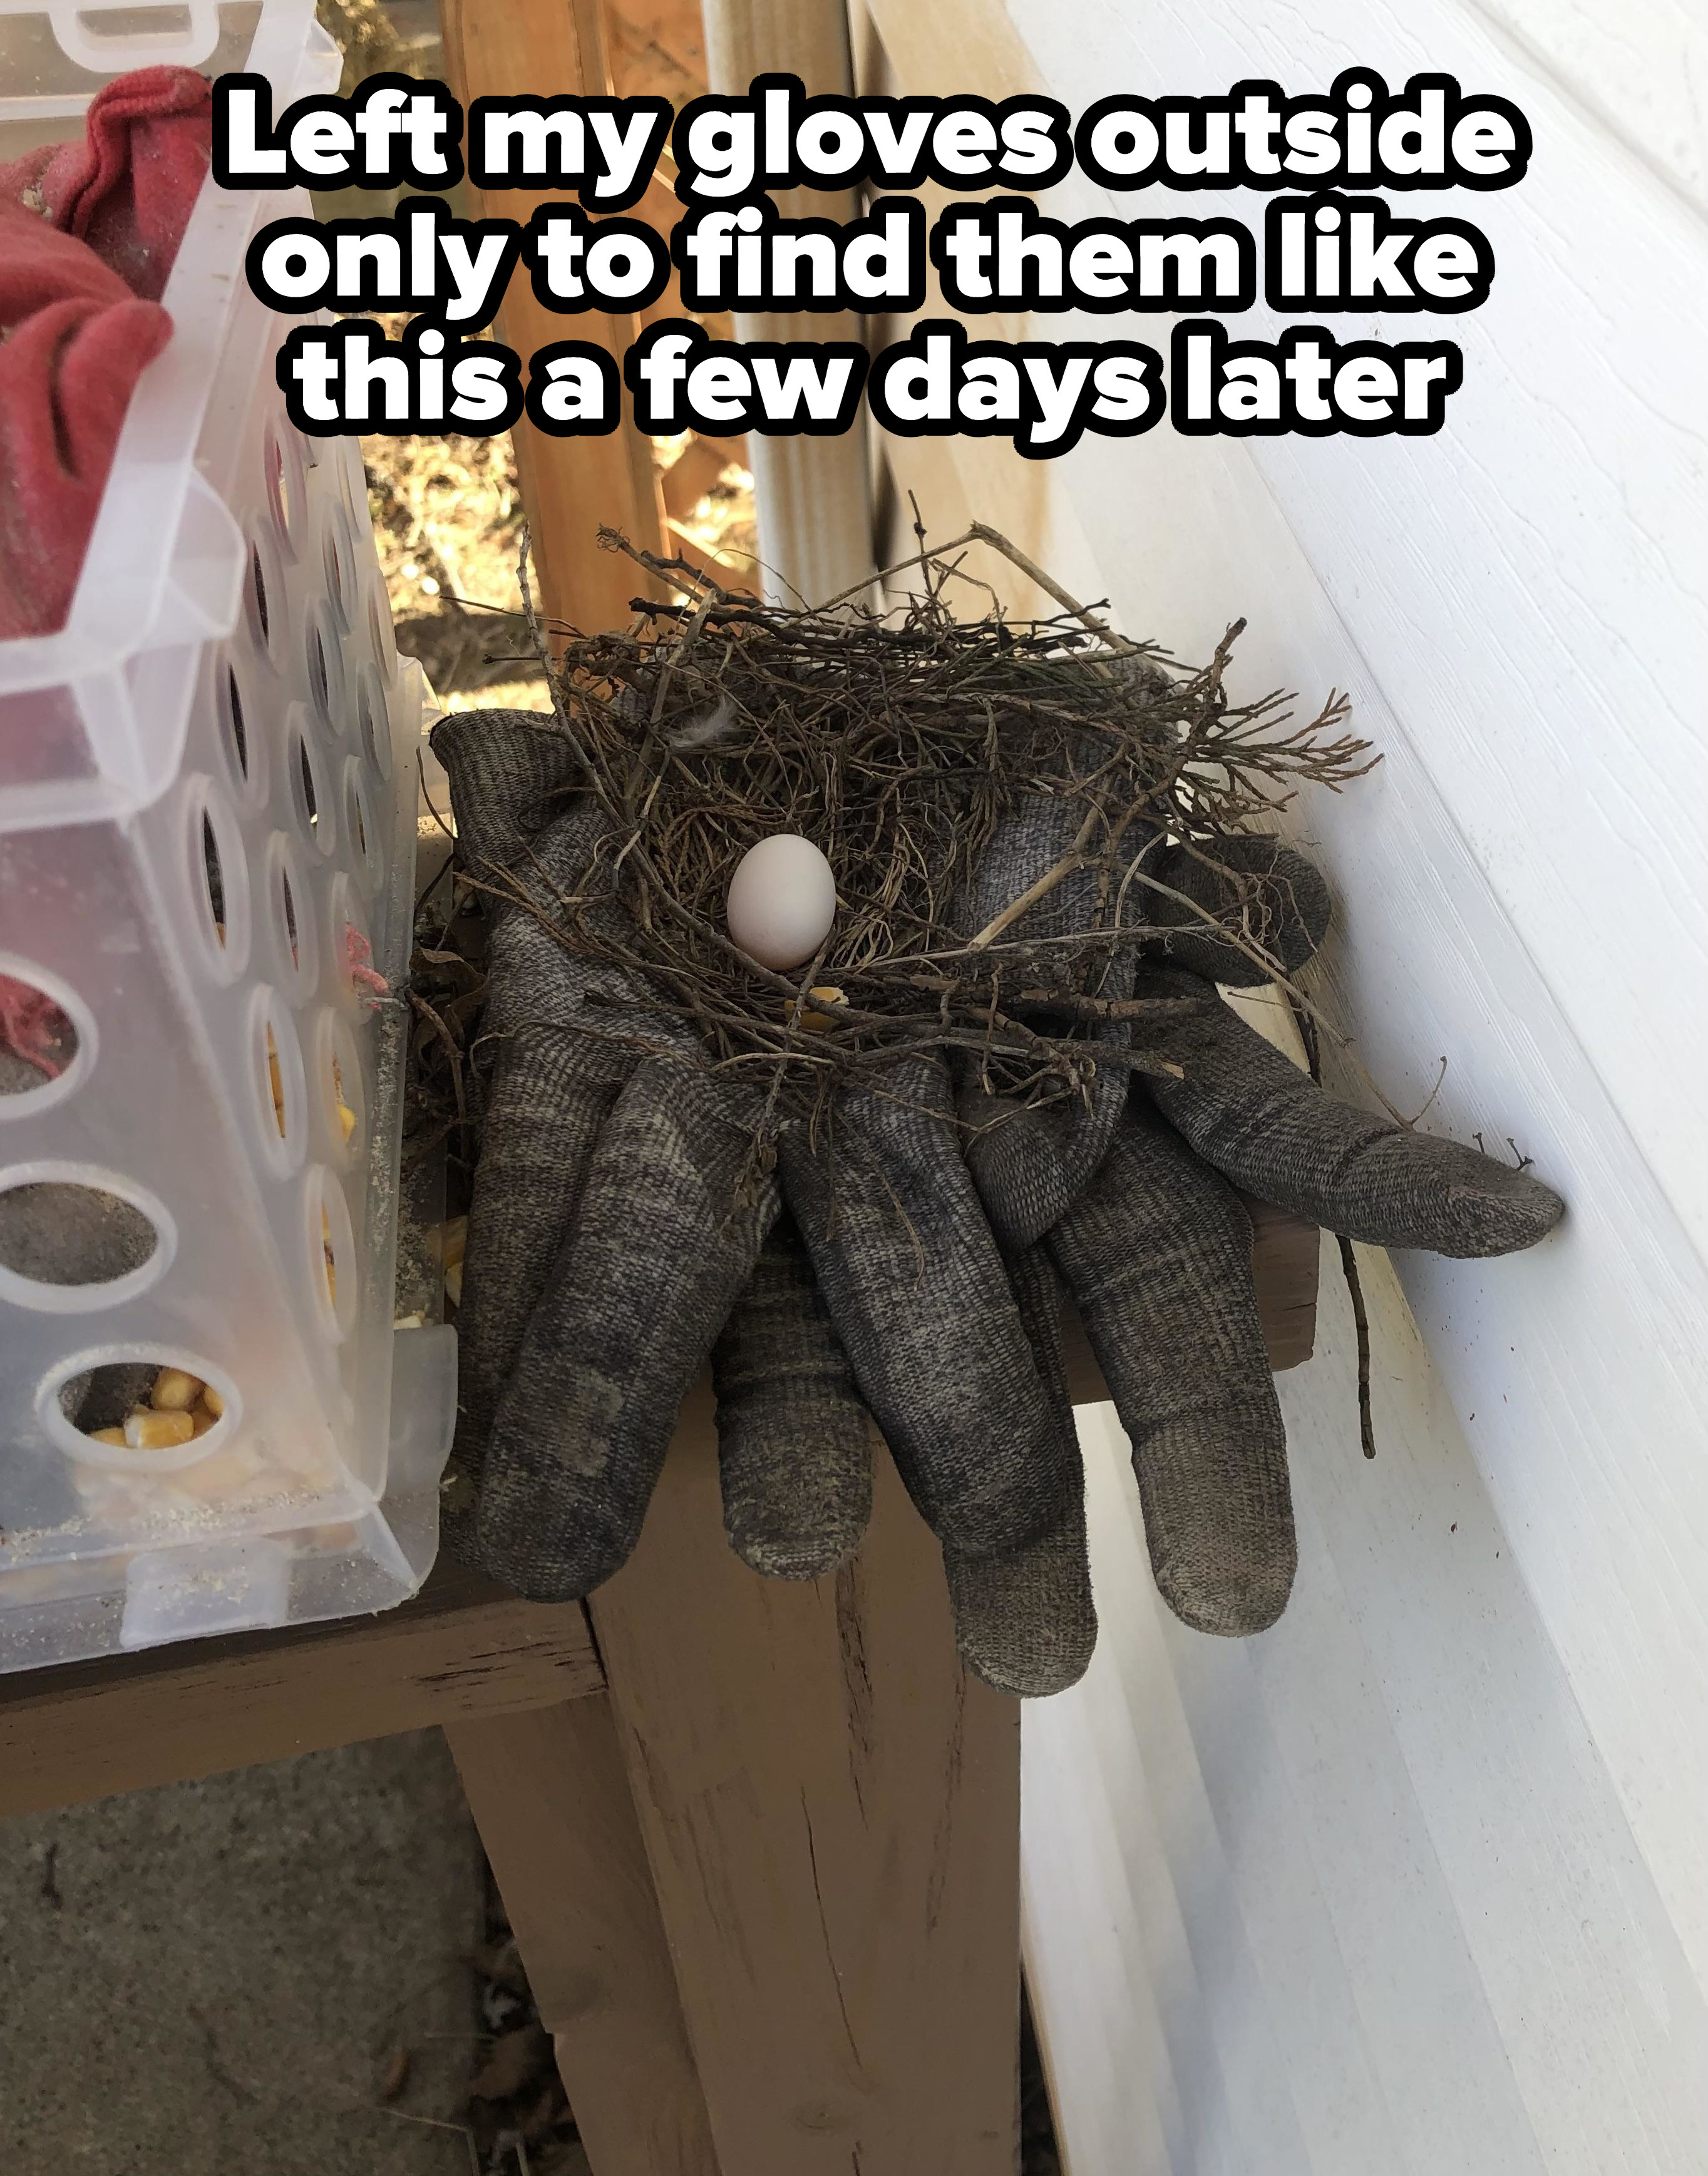 A nest on a set of gloves